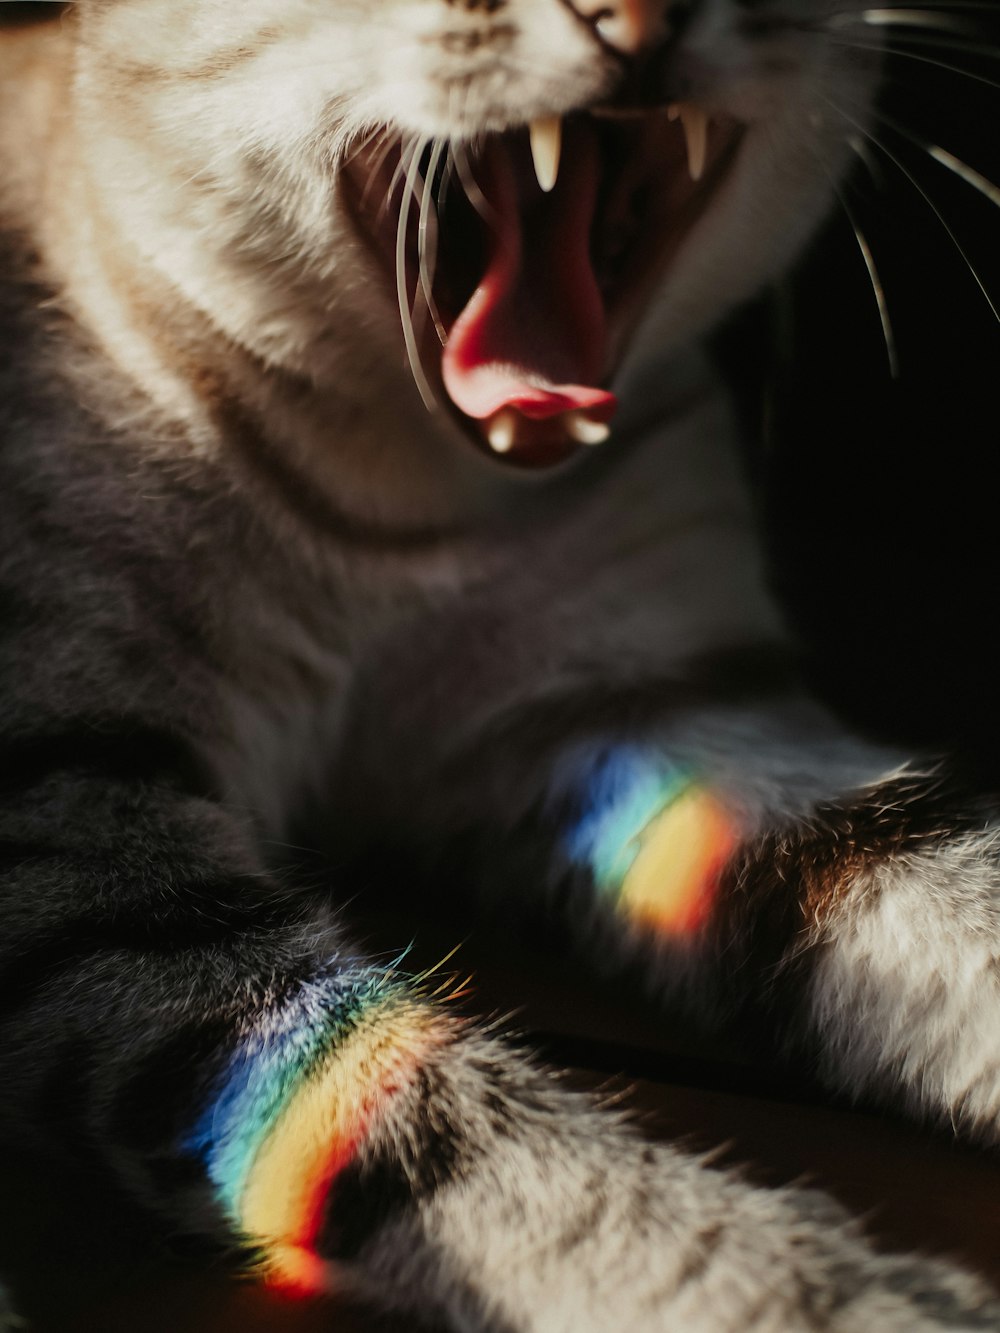 Un primer plano de un gato con la boca abierta